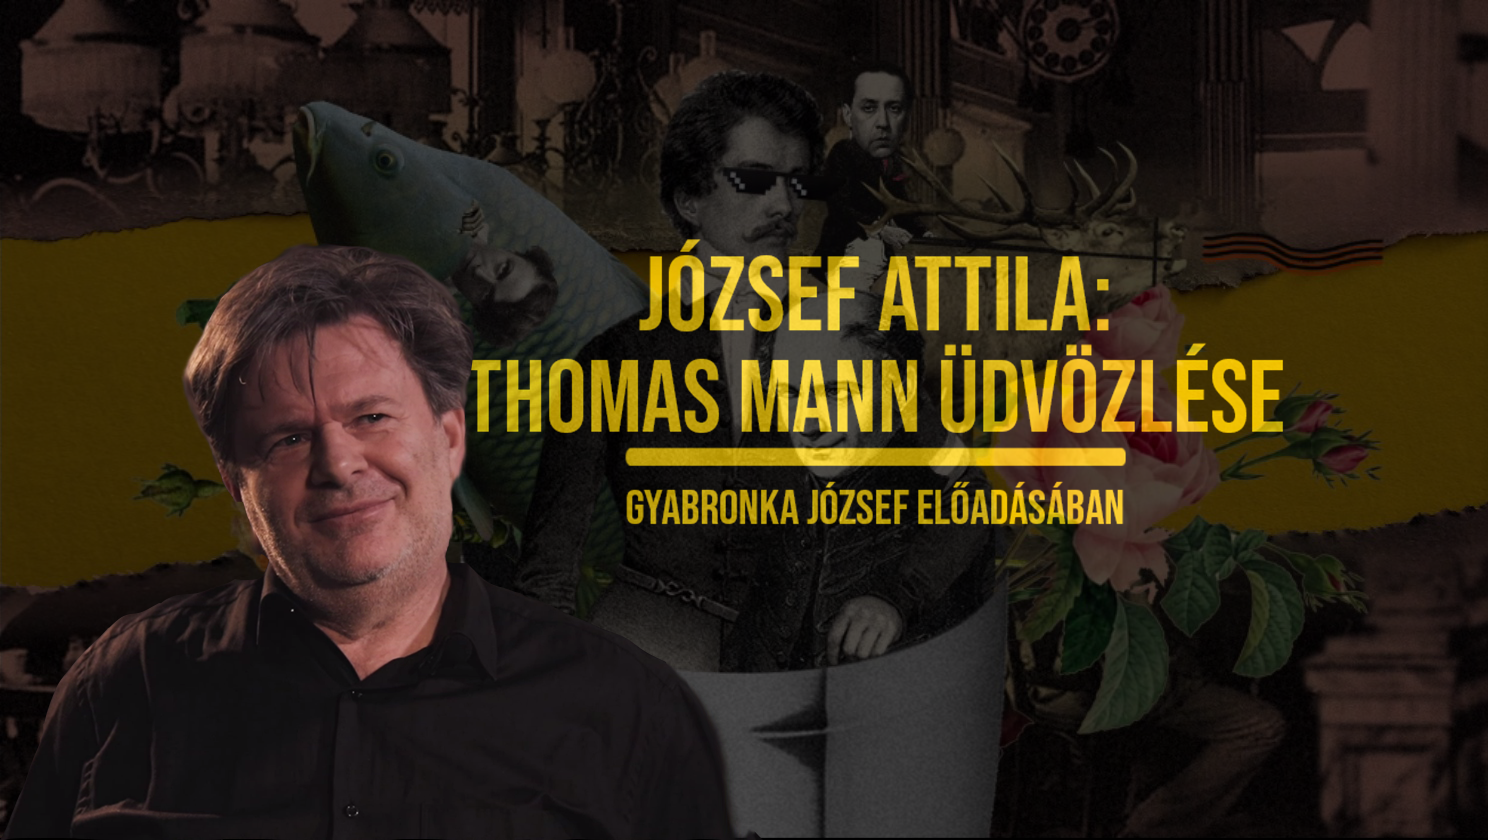 József Attila: Thomas Mann üdvözlése | Gyabronka József előadásában